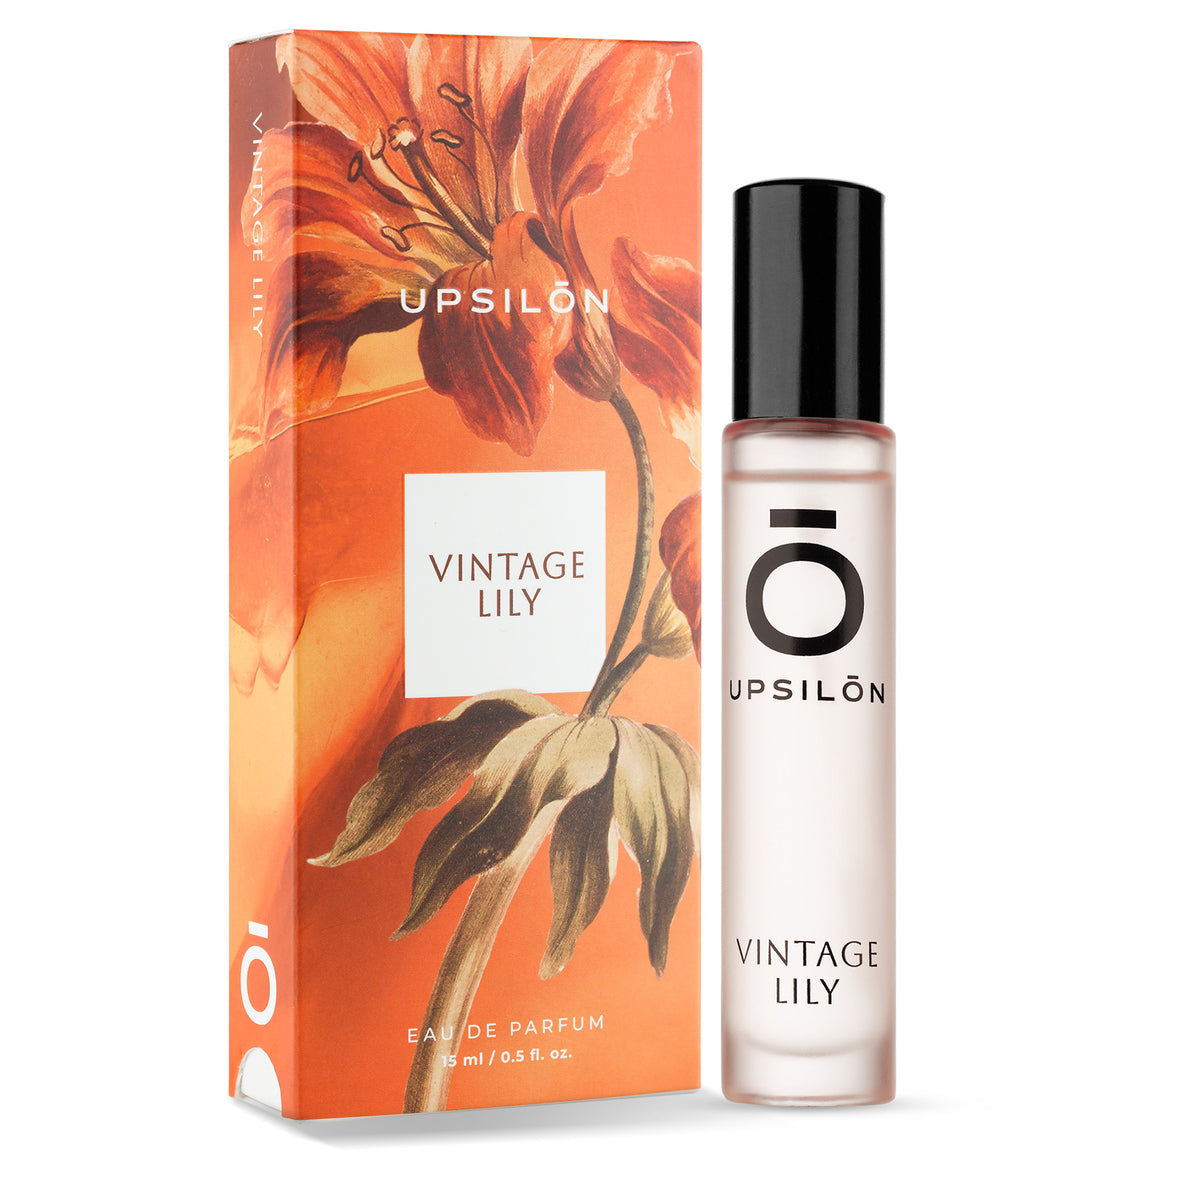 UPSILON Vintage Lily Eau de Parfum, 15 ml travel size